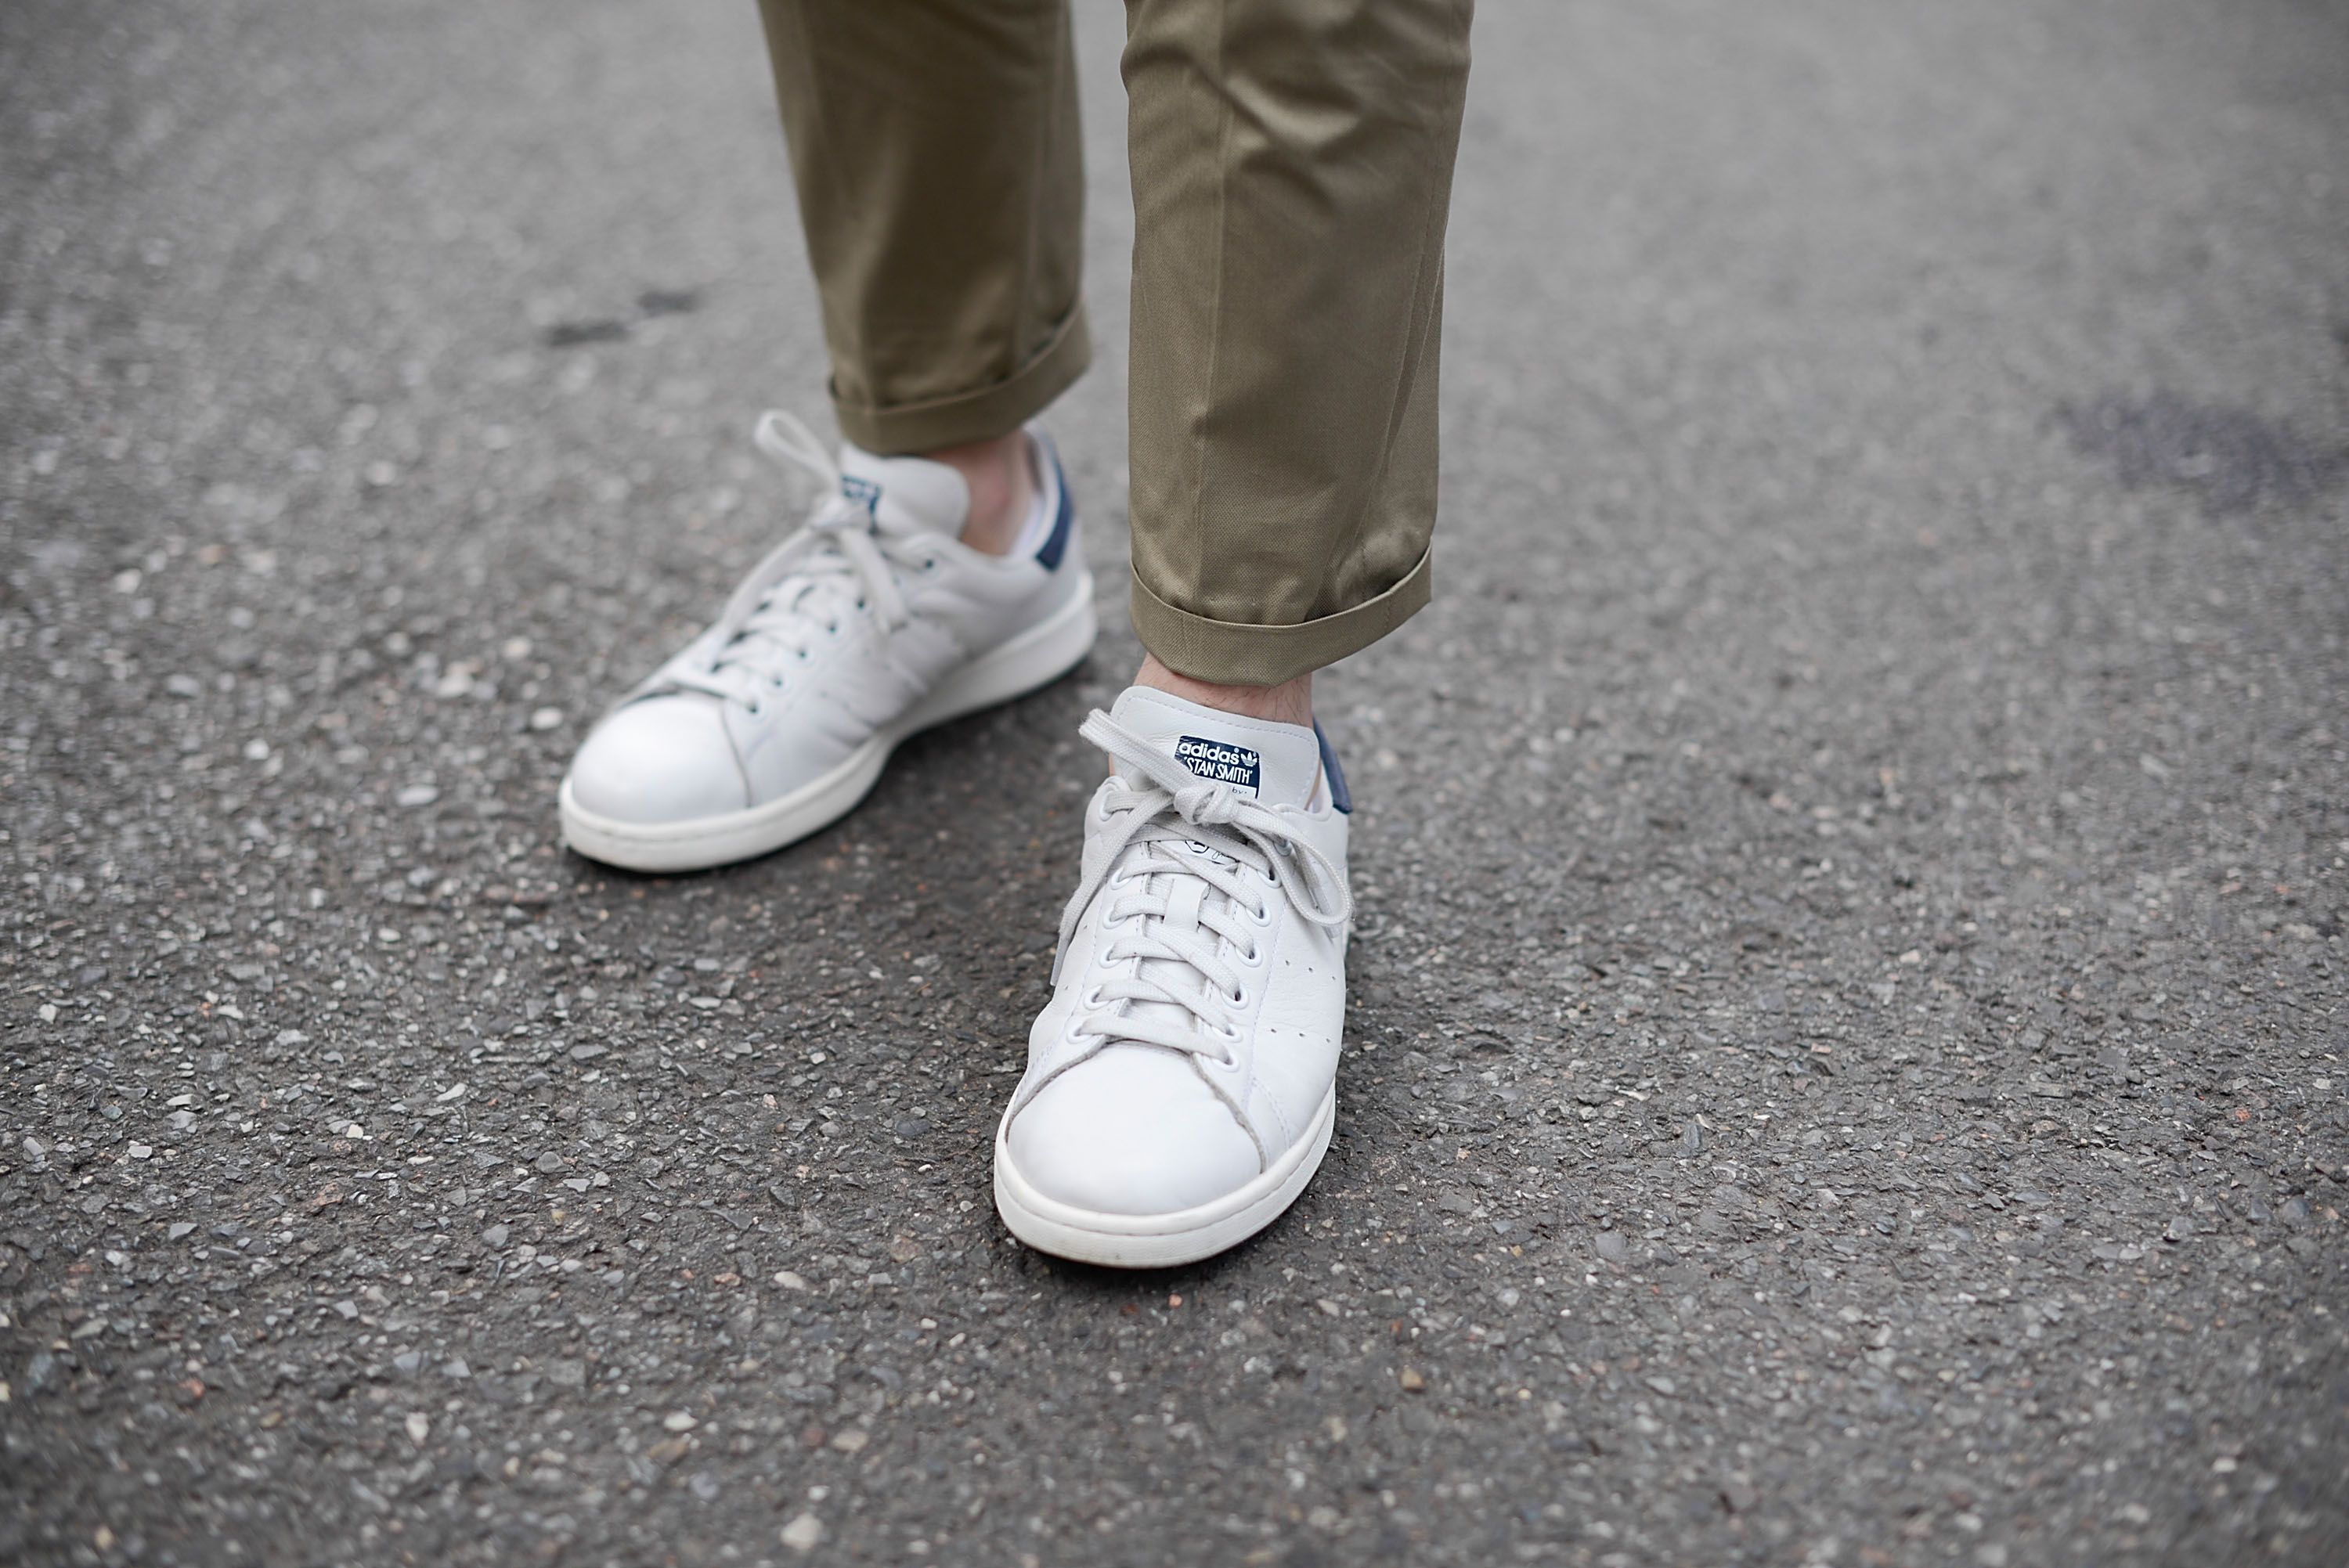 Cuáles son las mejores marcas de calzado minimalista? - Deditos Barefoot